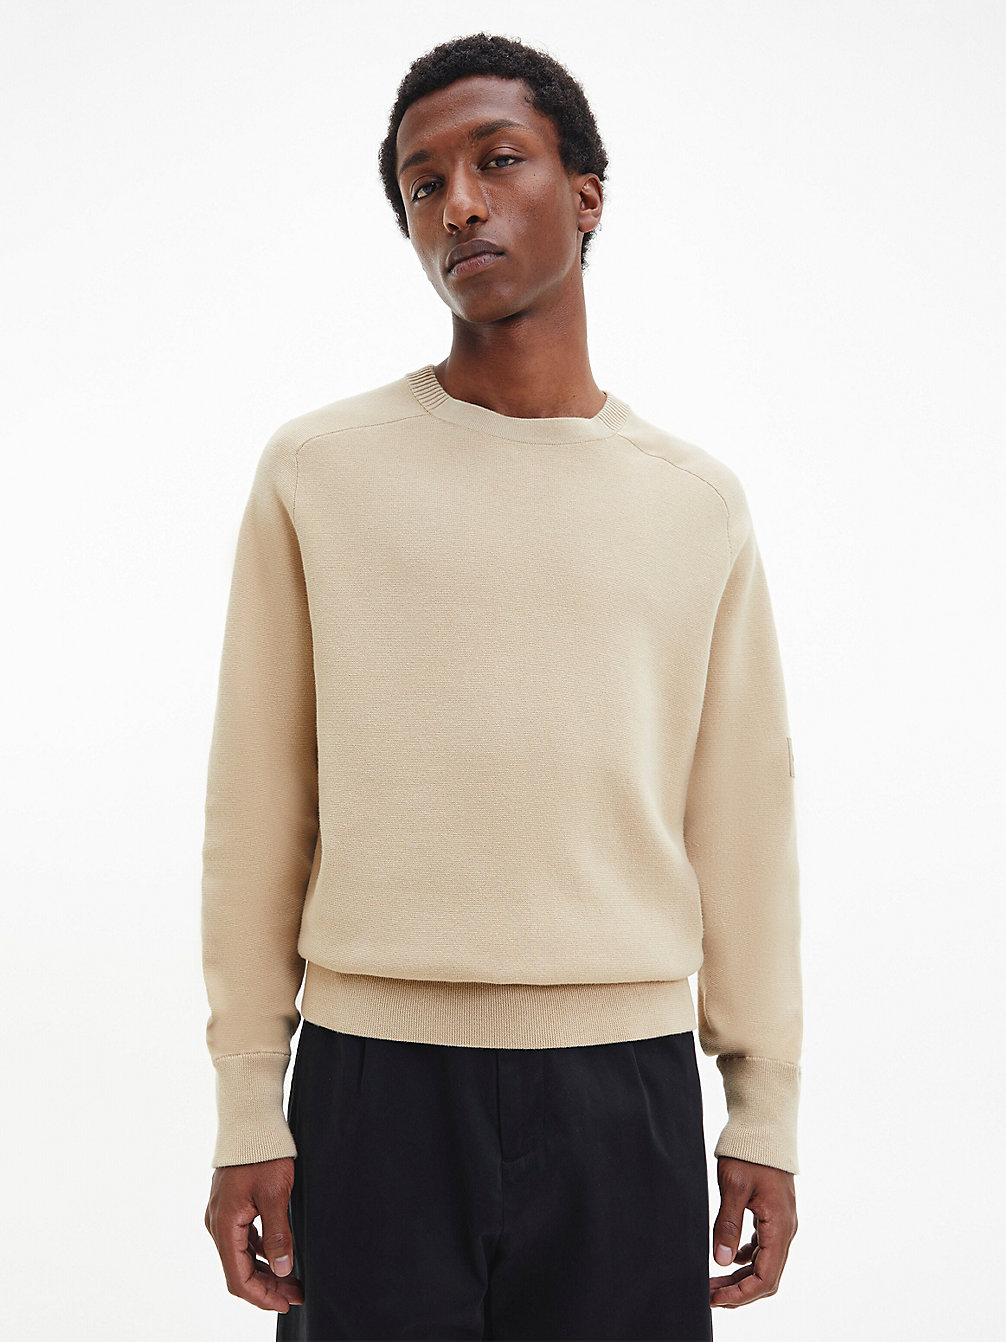 TRAVERTINE > Swobodny Sweter Z Ozdobnymi Szwami Milano > undefined Mężczyźni - Calvin Klein